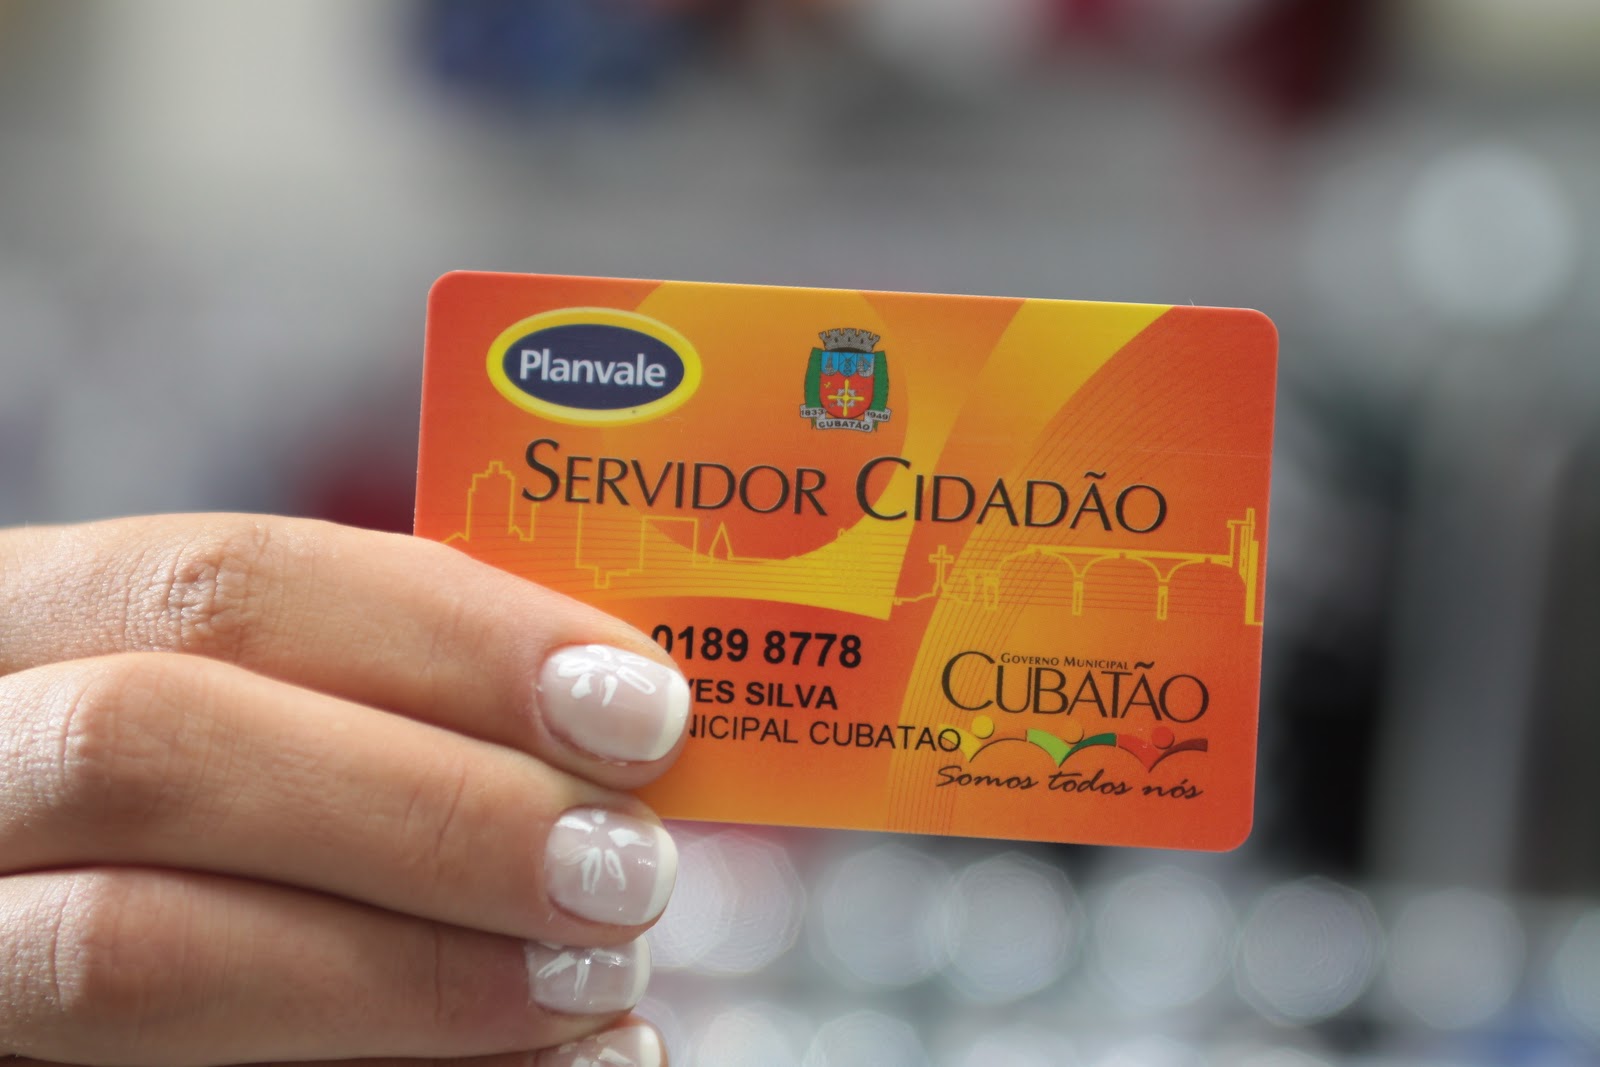 Servidores e o comércio em geral contabilizam perdas sem o Cartão Servidor Cidadão.